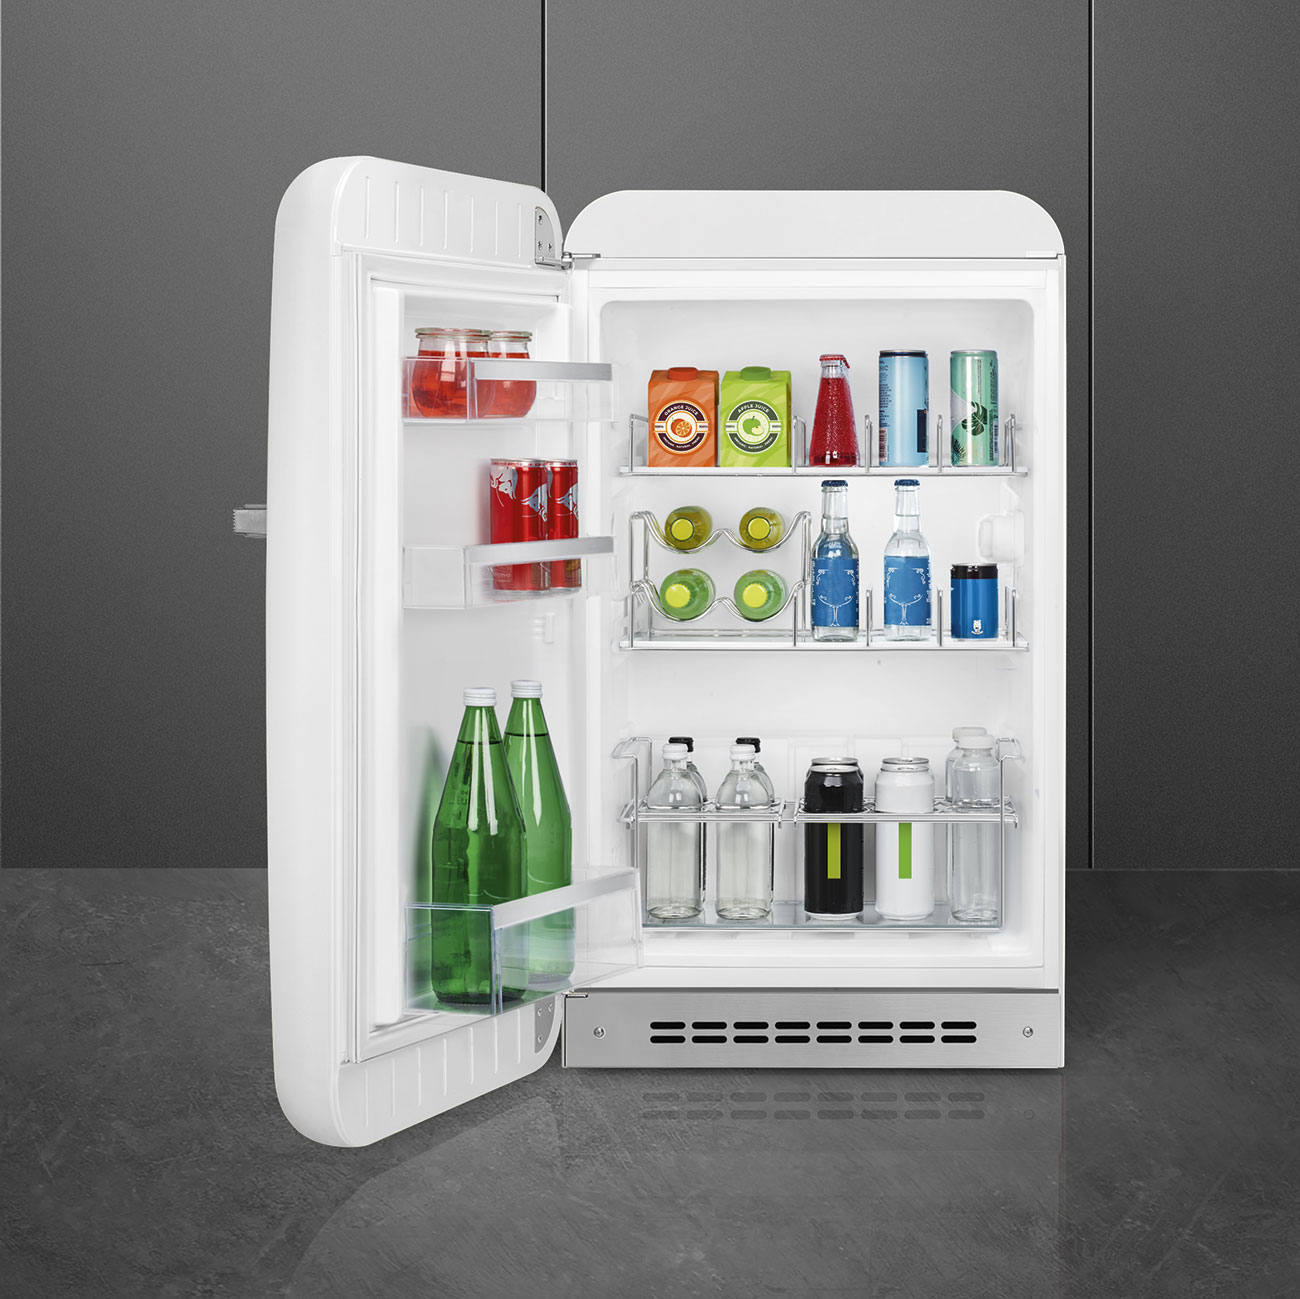 White refrigerator - Smeg_6